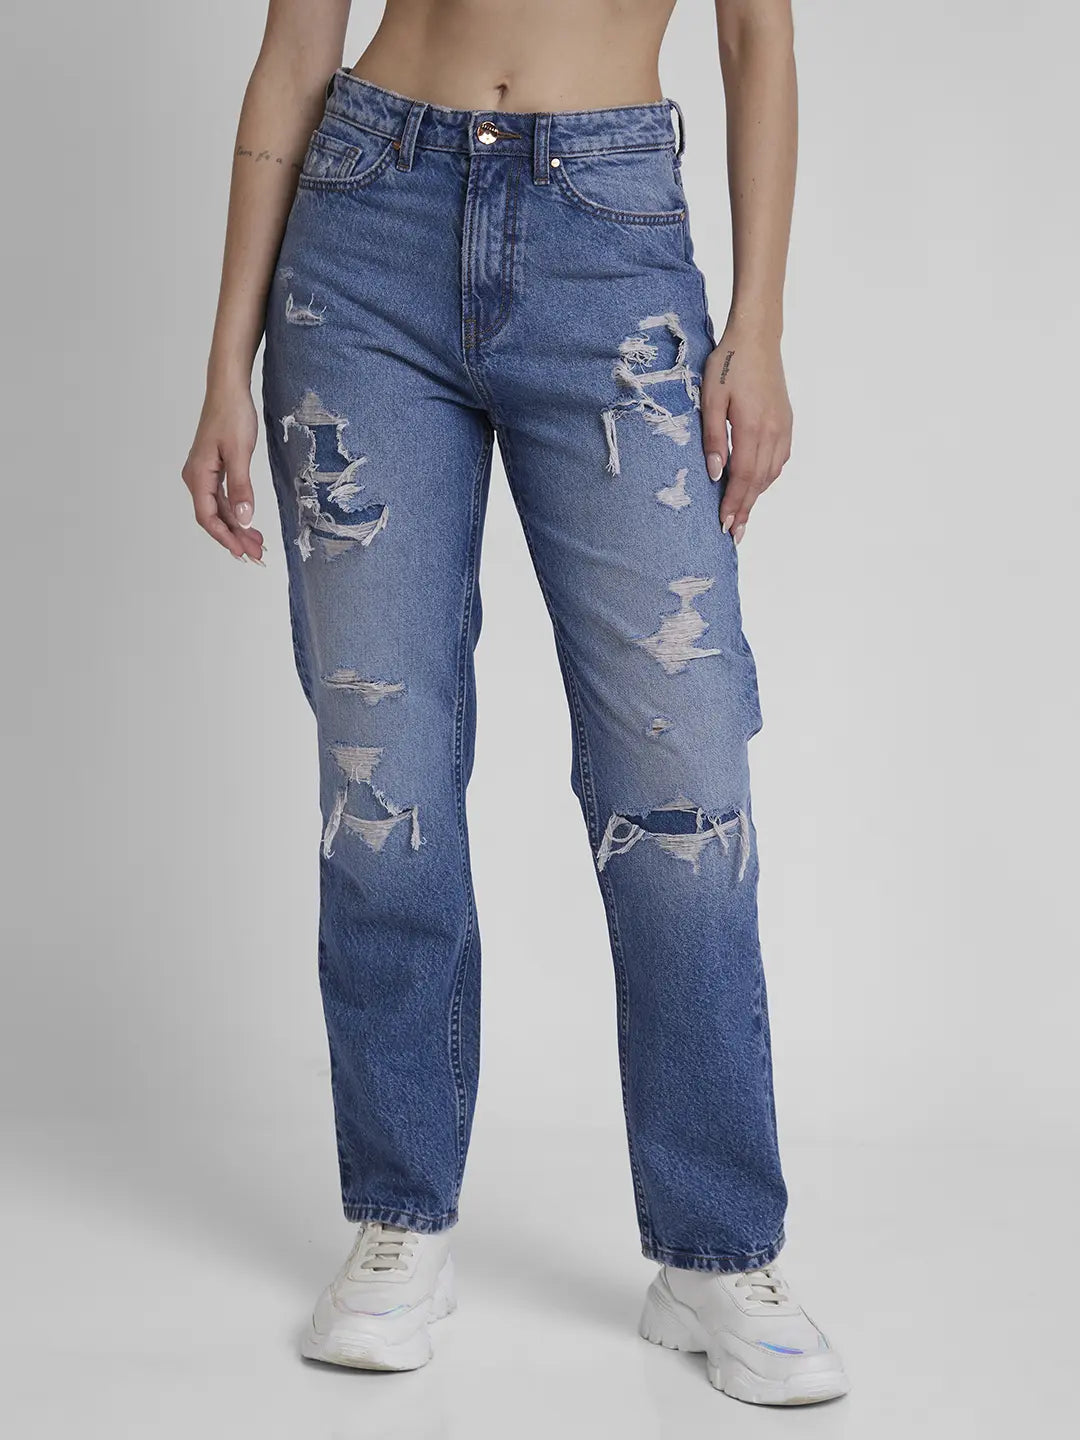 Royal Spider Funky Jeans For Men | Comfort fit jeans, Jeans brands, Mens  jeans